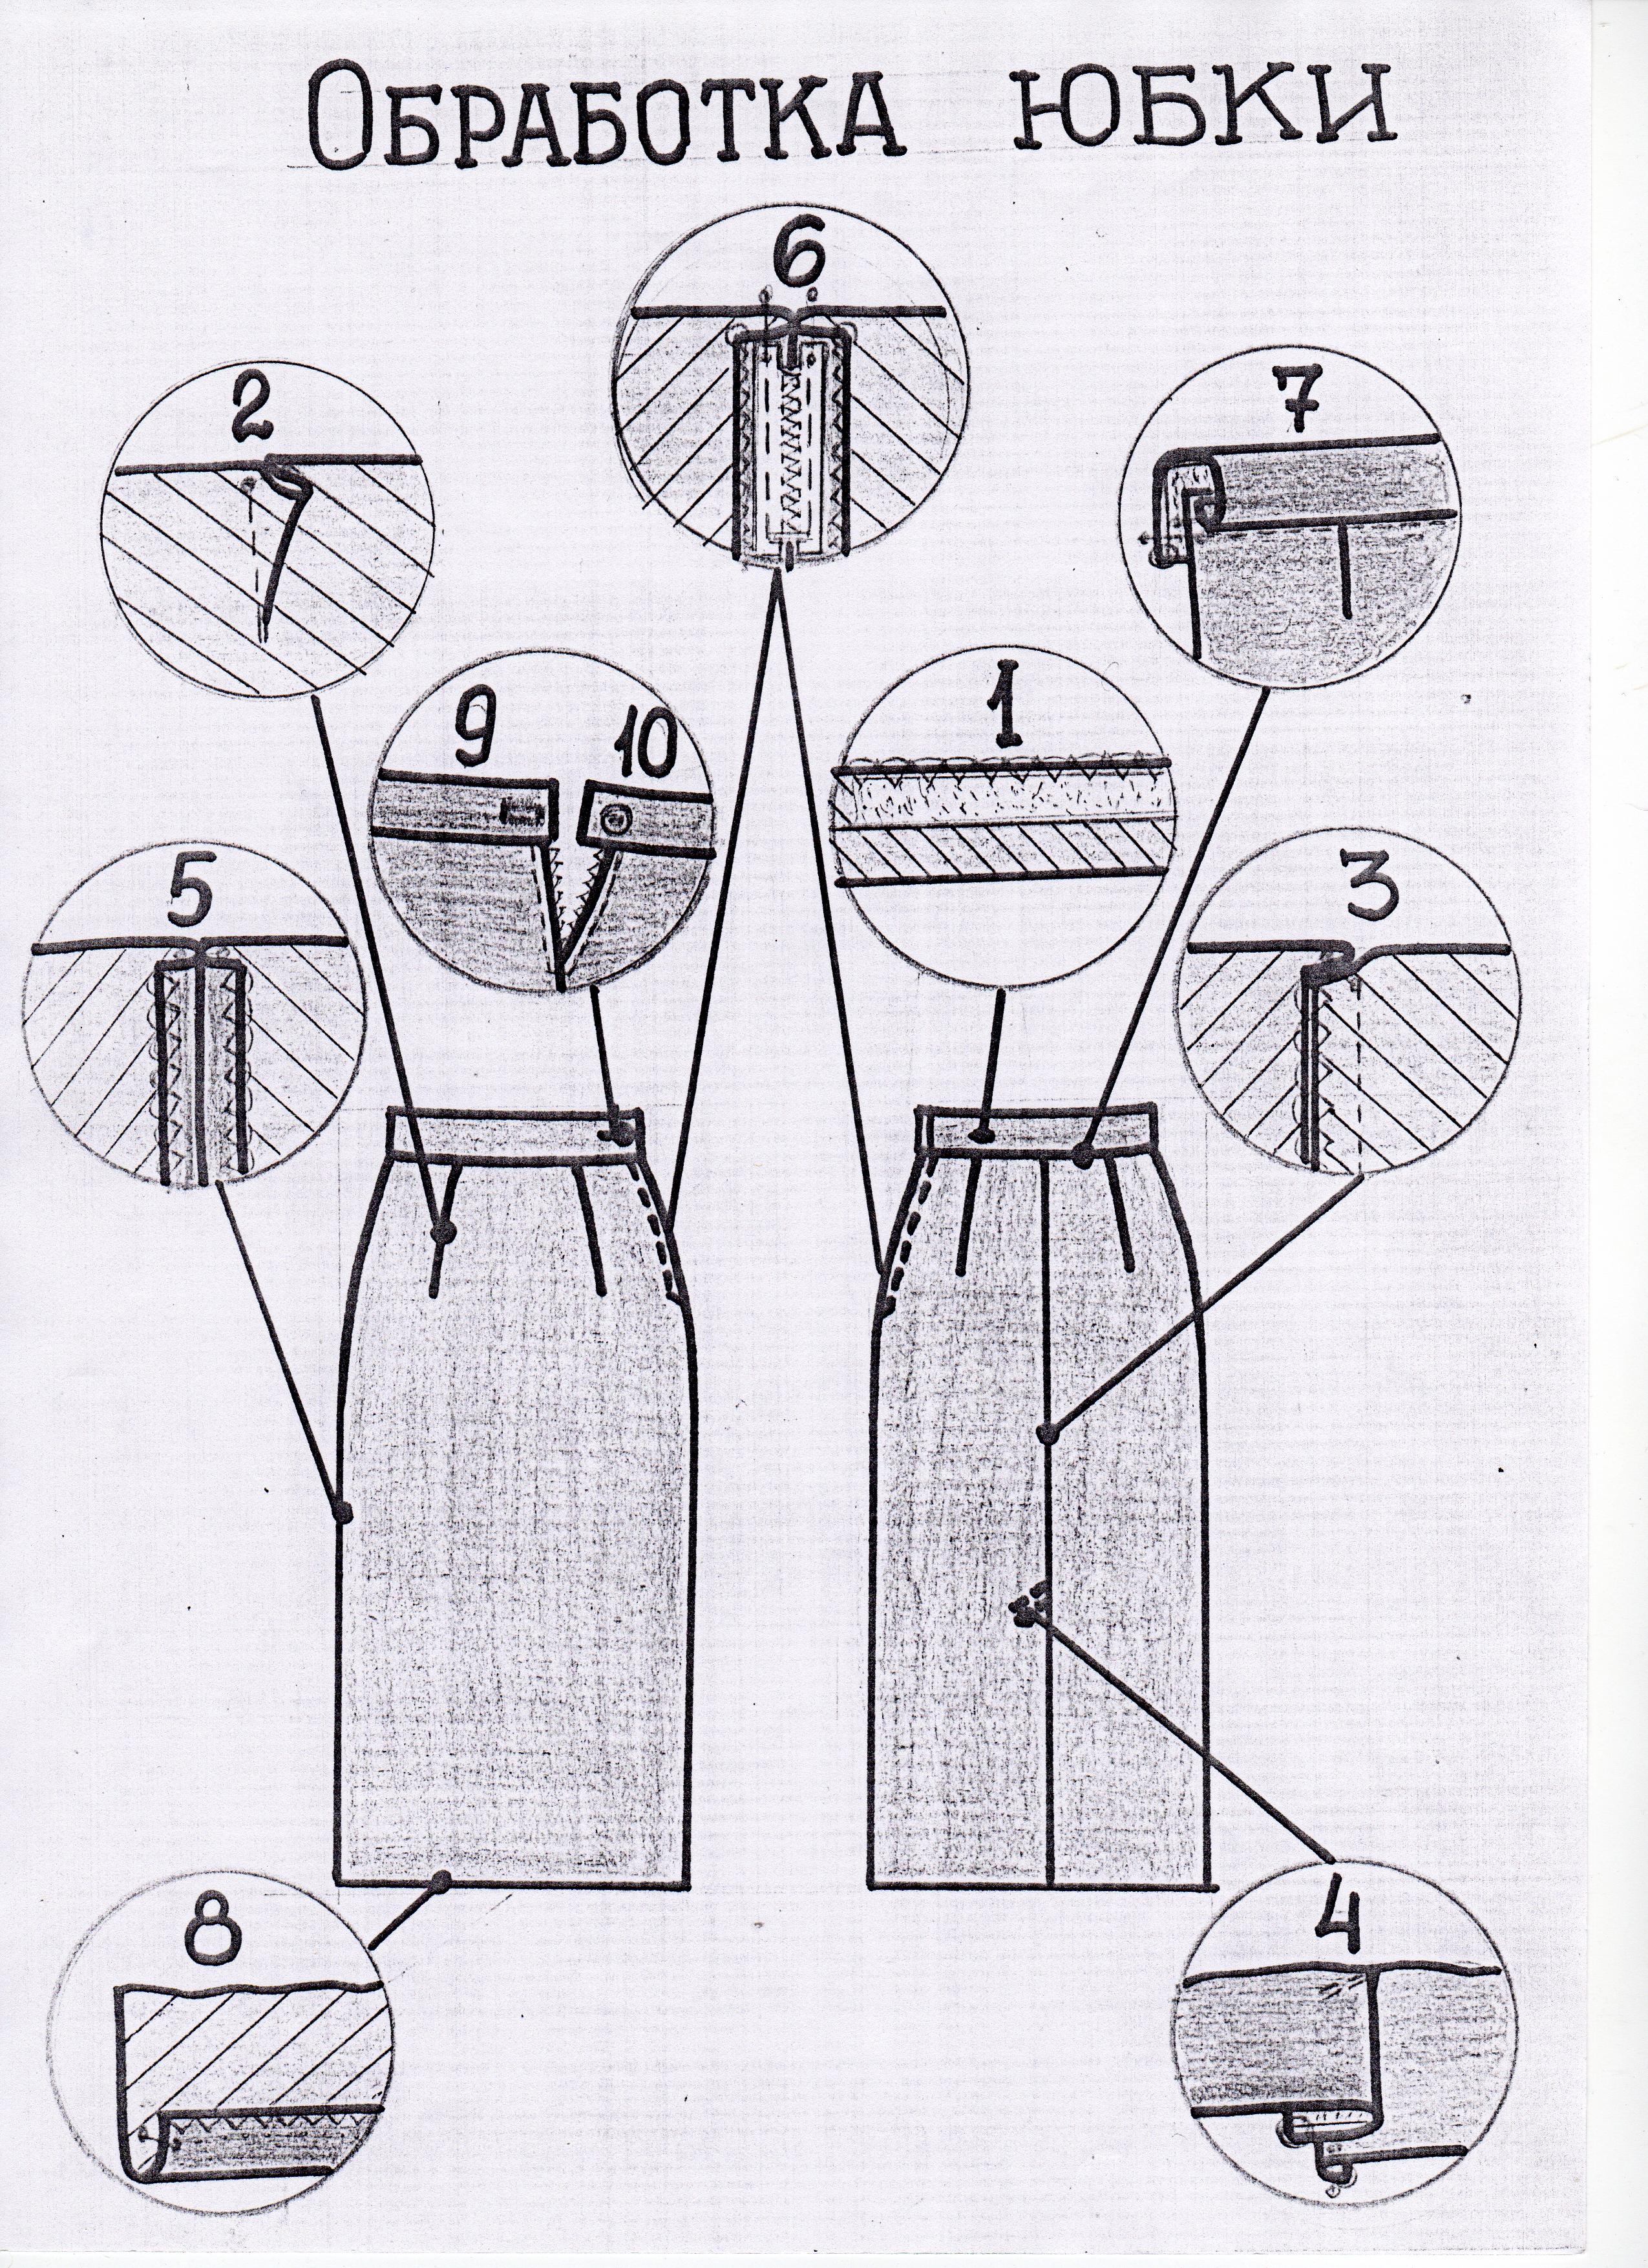 Костюм представляющий собой соединение верхней части одежды. Схема технологической последовательности пошива юбки. Технологическая карта обработки юбки. Технологические схемы обработки юбки. Схемы обработки швейных узлов.